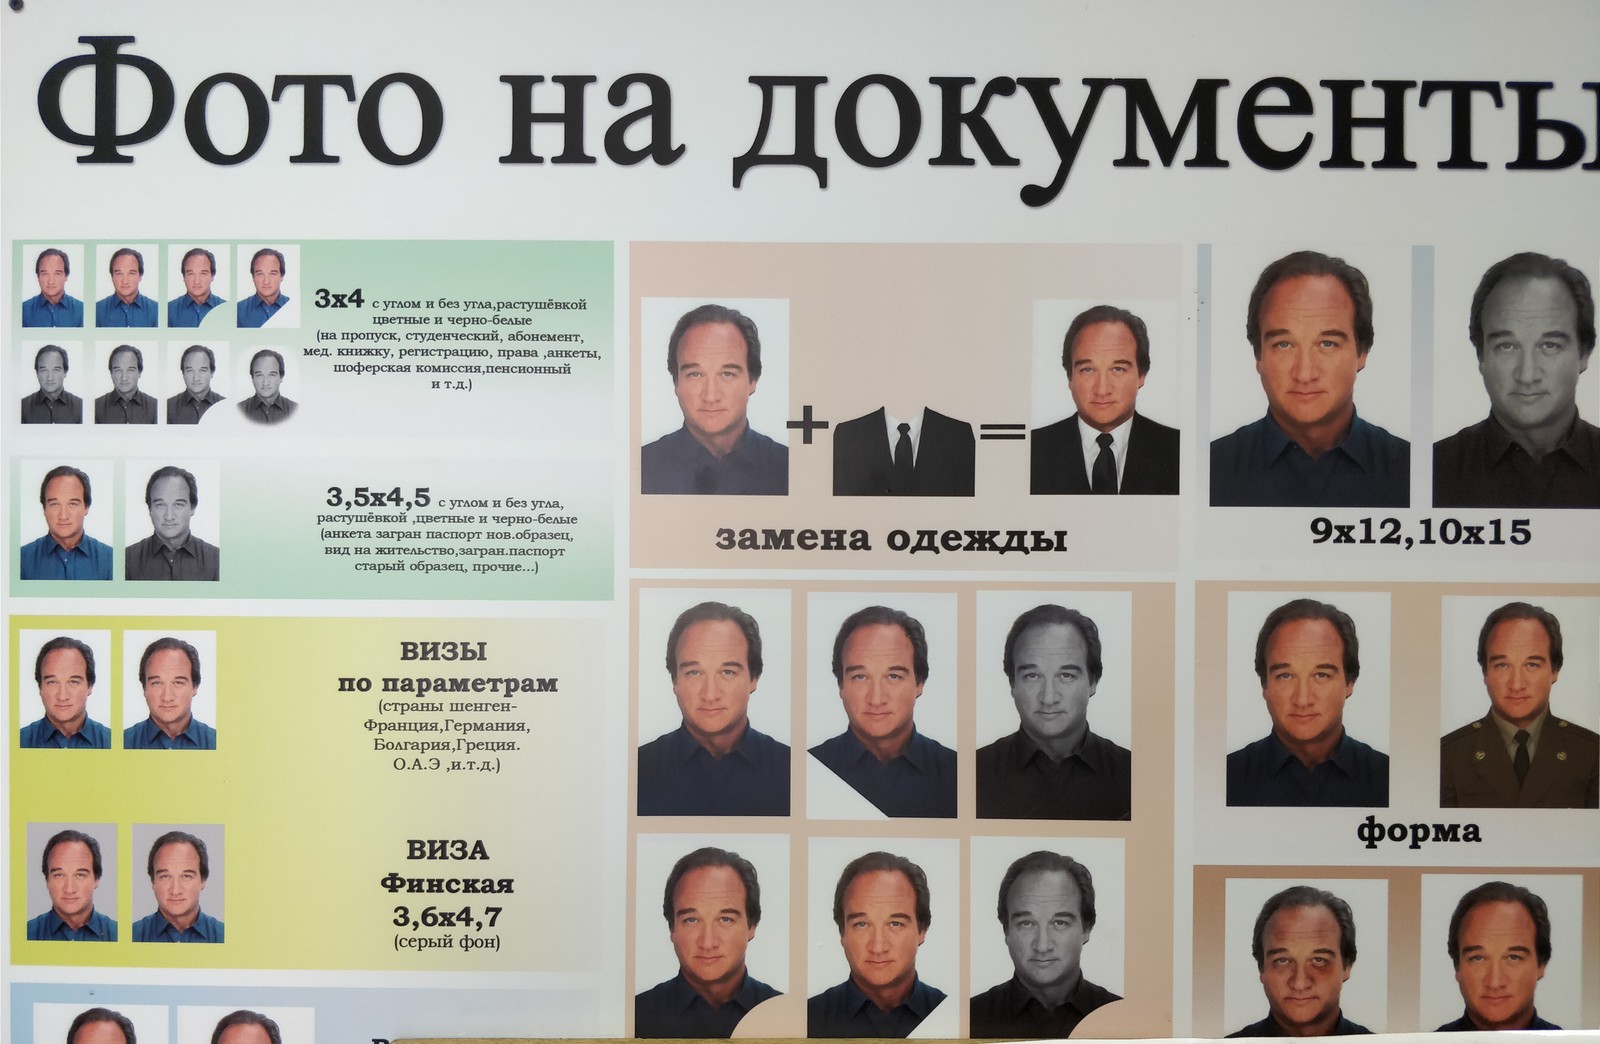 фото на документы москва